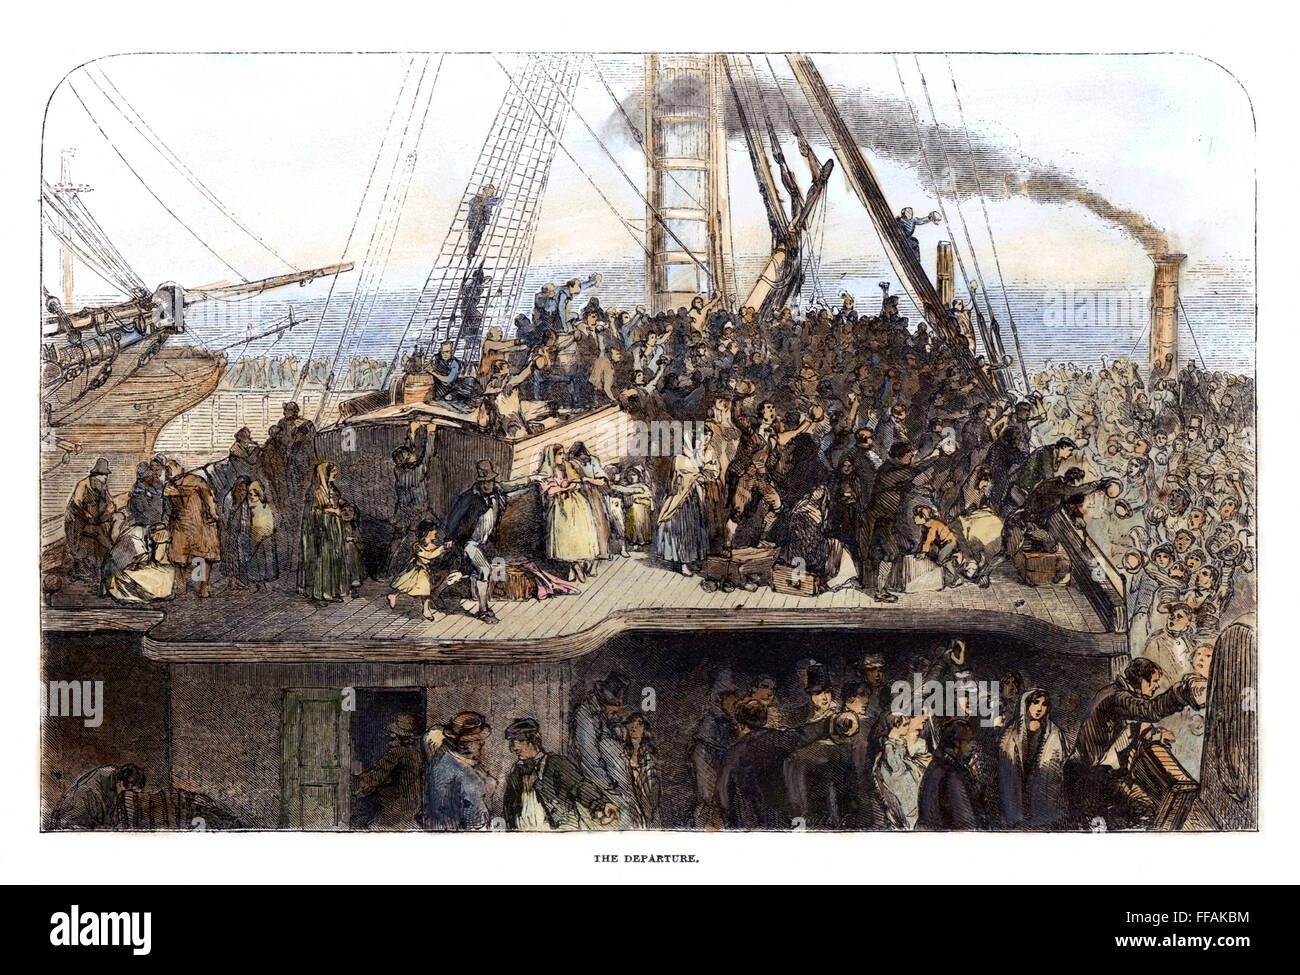 Immigranti irlandesi, 1850. /Nil partenza per l'America: incisione su legno, inglese, 1850. Foto Stock